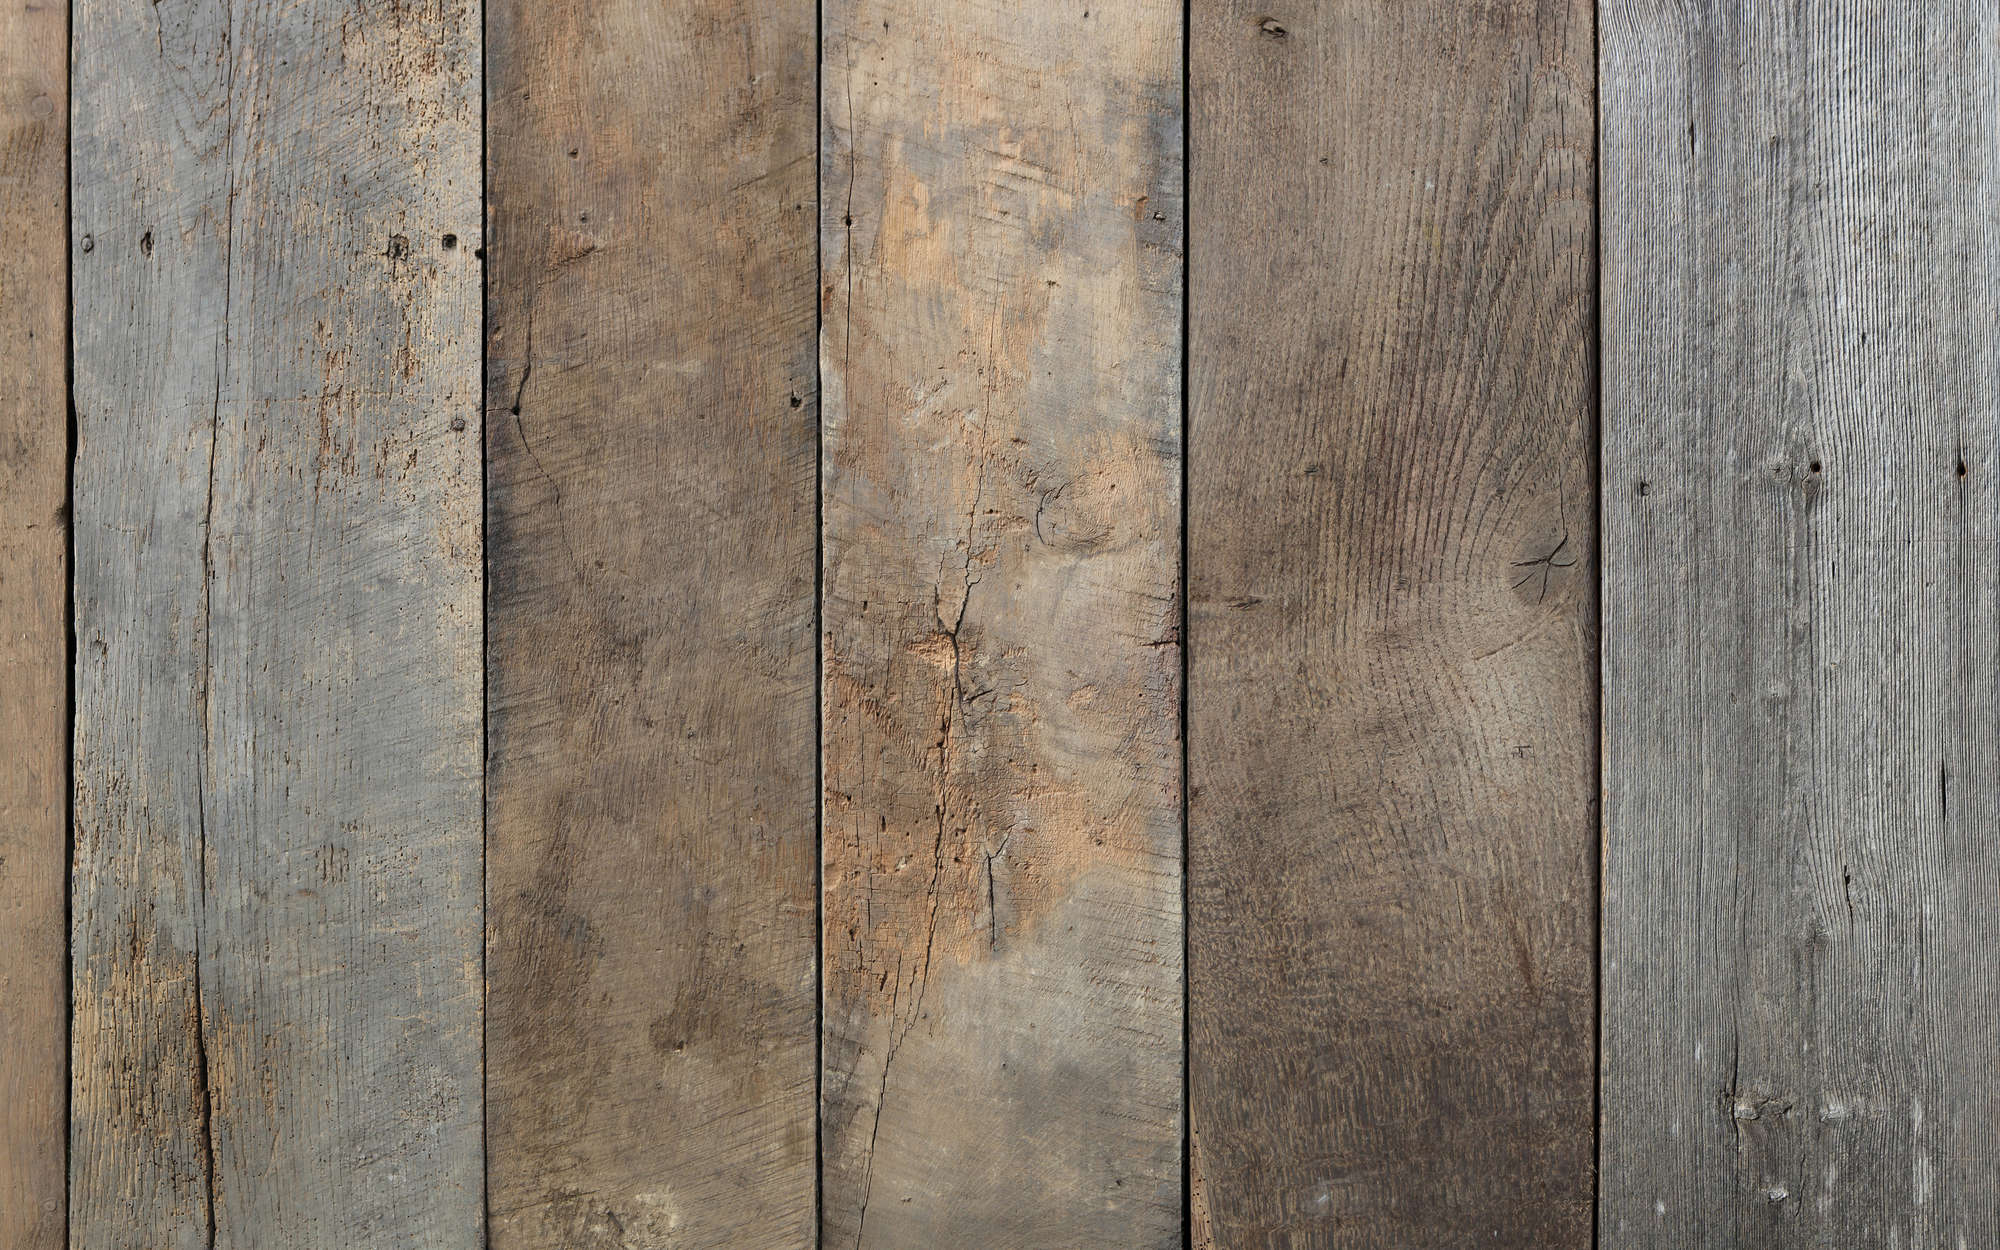             Old wooden floorboards mural - Matt smooth fleece
        